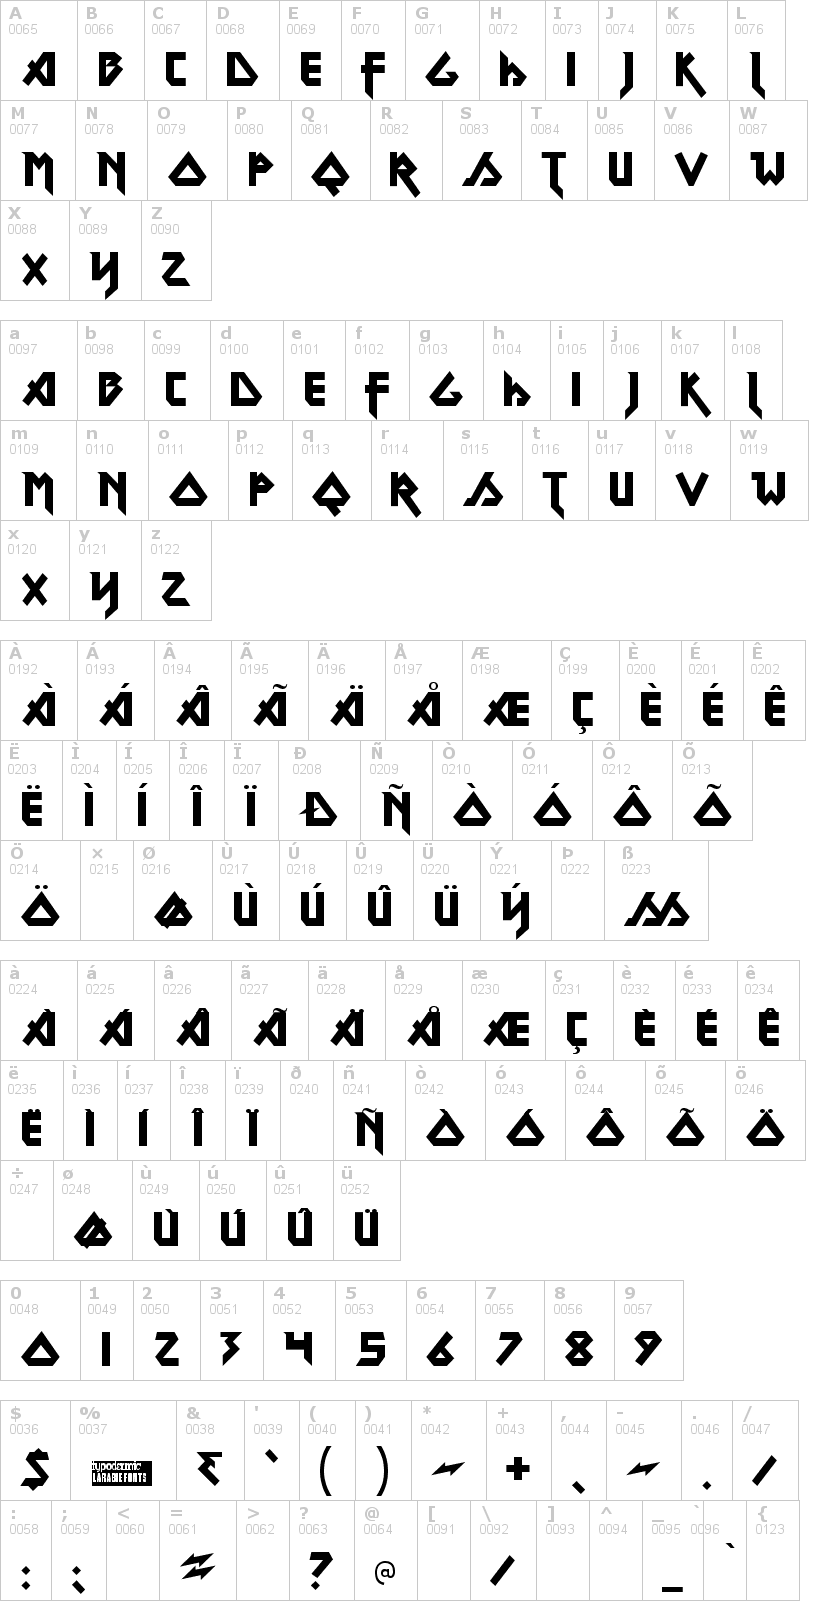 Lettere dell'alfabeto del font metal-lord con le quali è possibile realizzare adesivi prespaziati